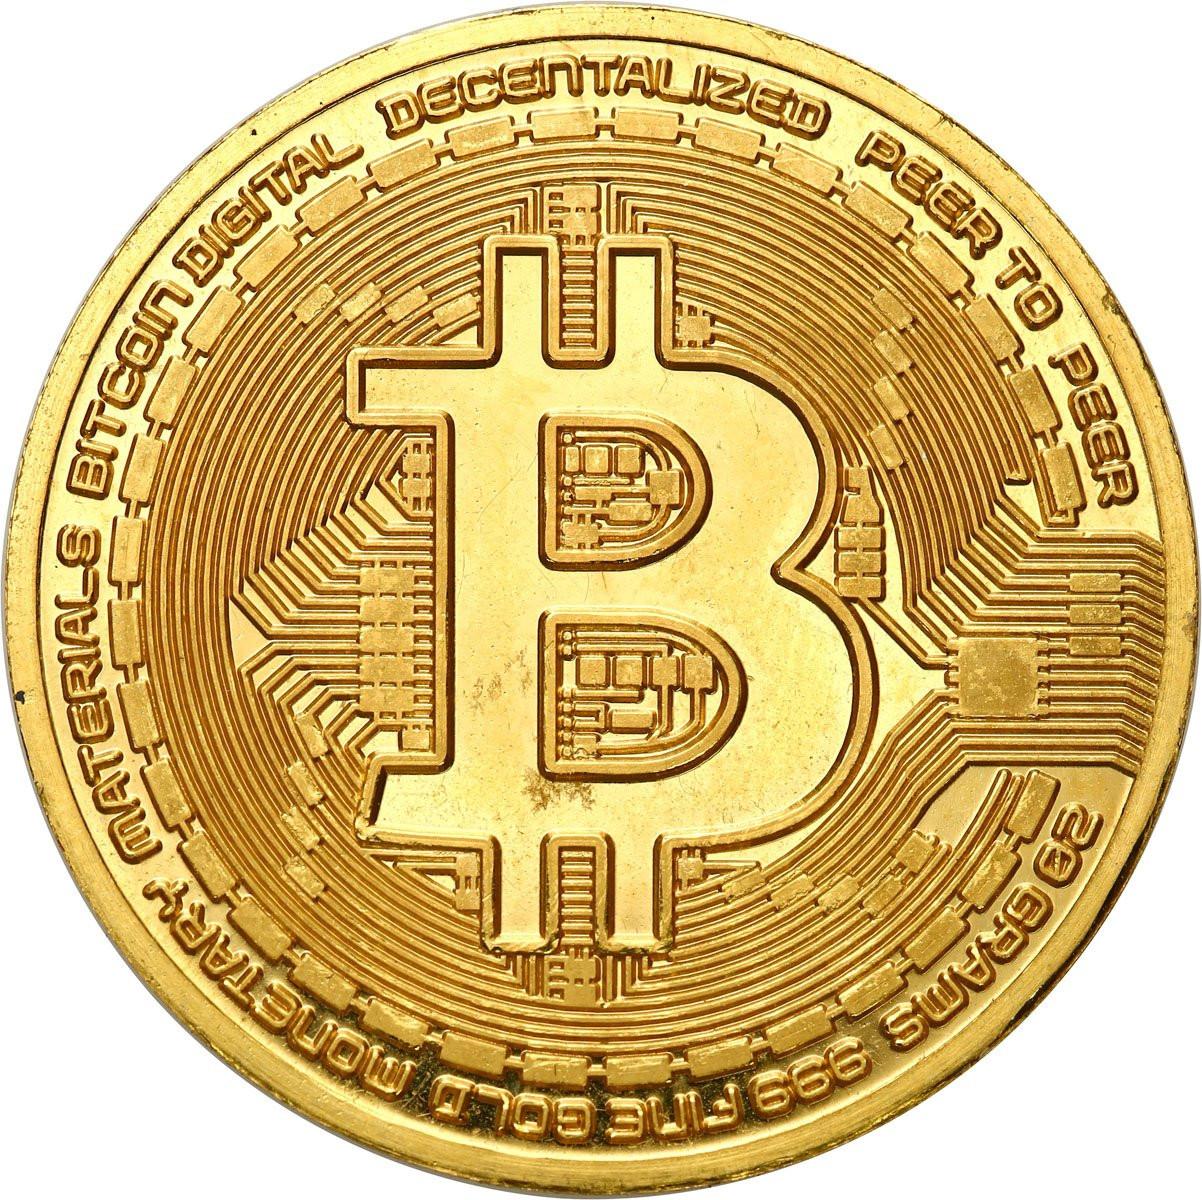 Moneta BITCOIN ze złota - moneta 20 gramów złota